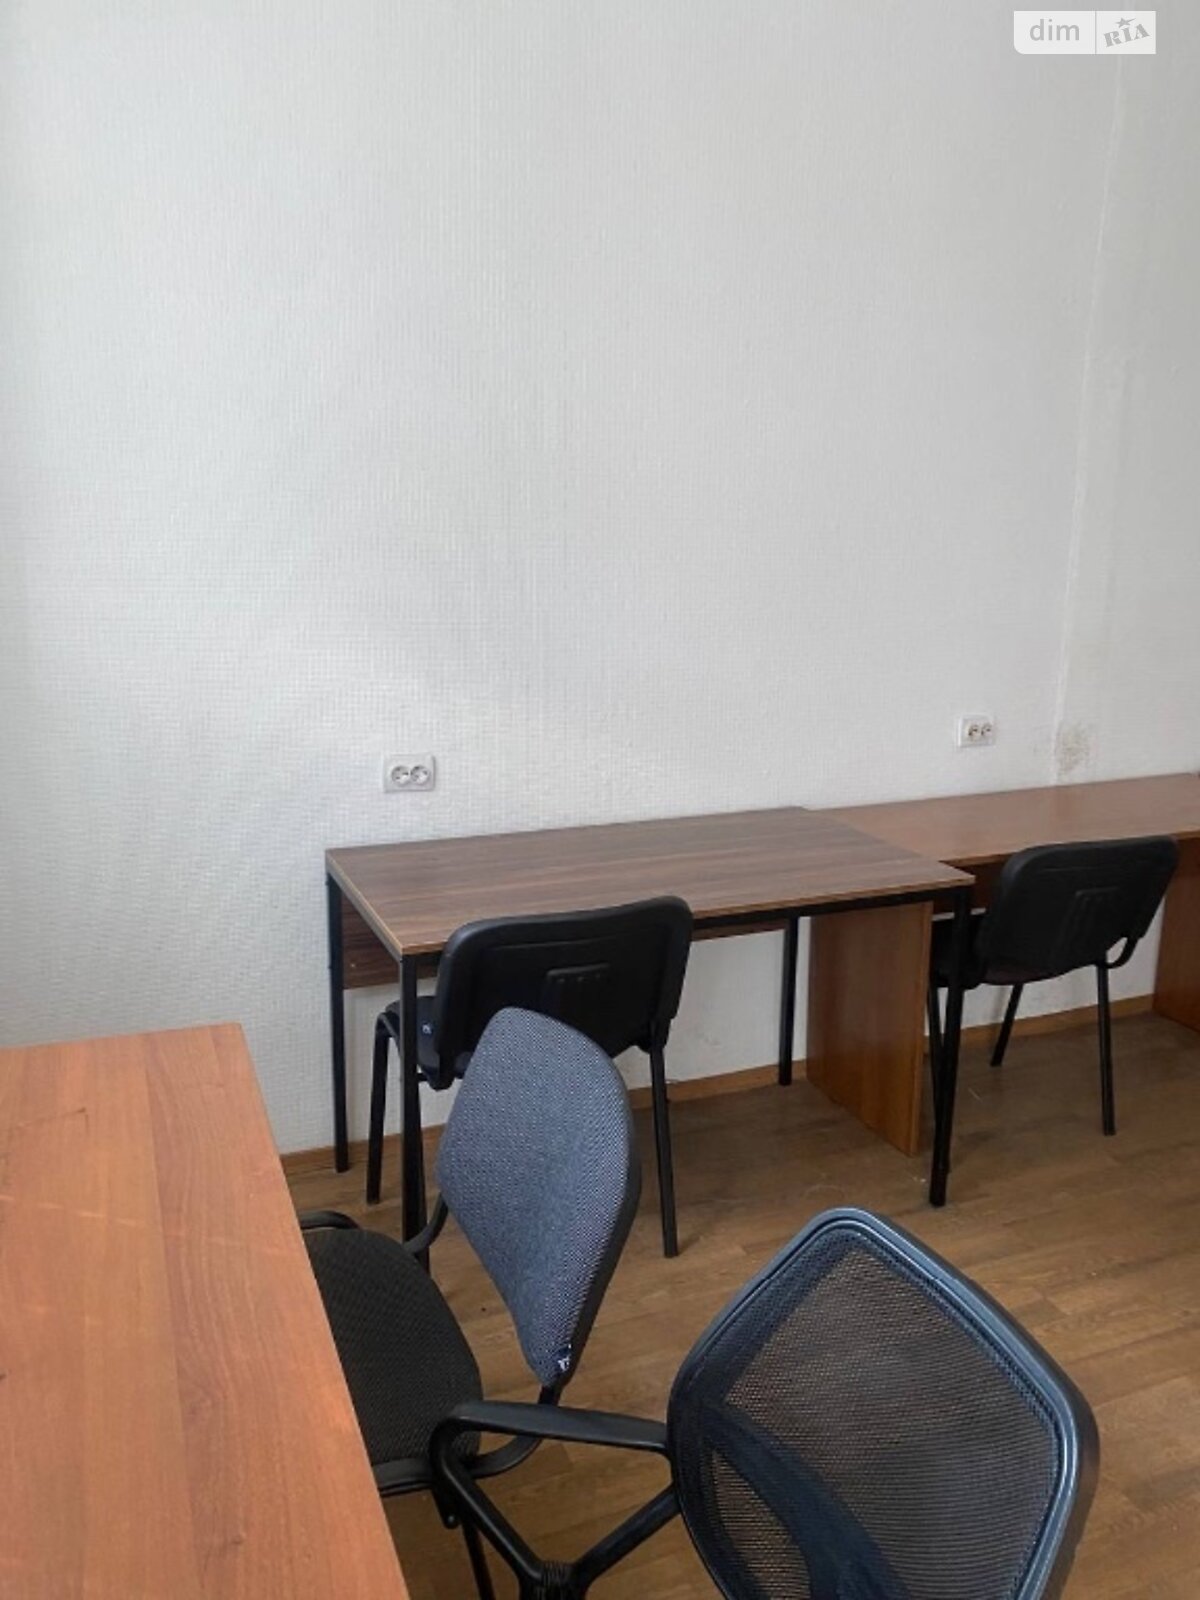 Аренда офисного помещения в Киеве, Крещатик улица 44, помещений - 1, этаж - 3 фото 1